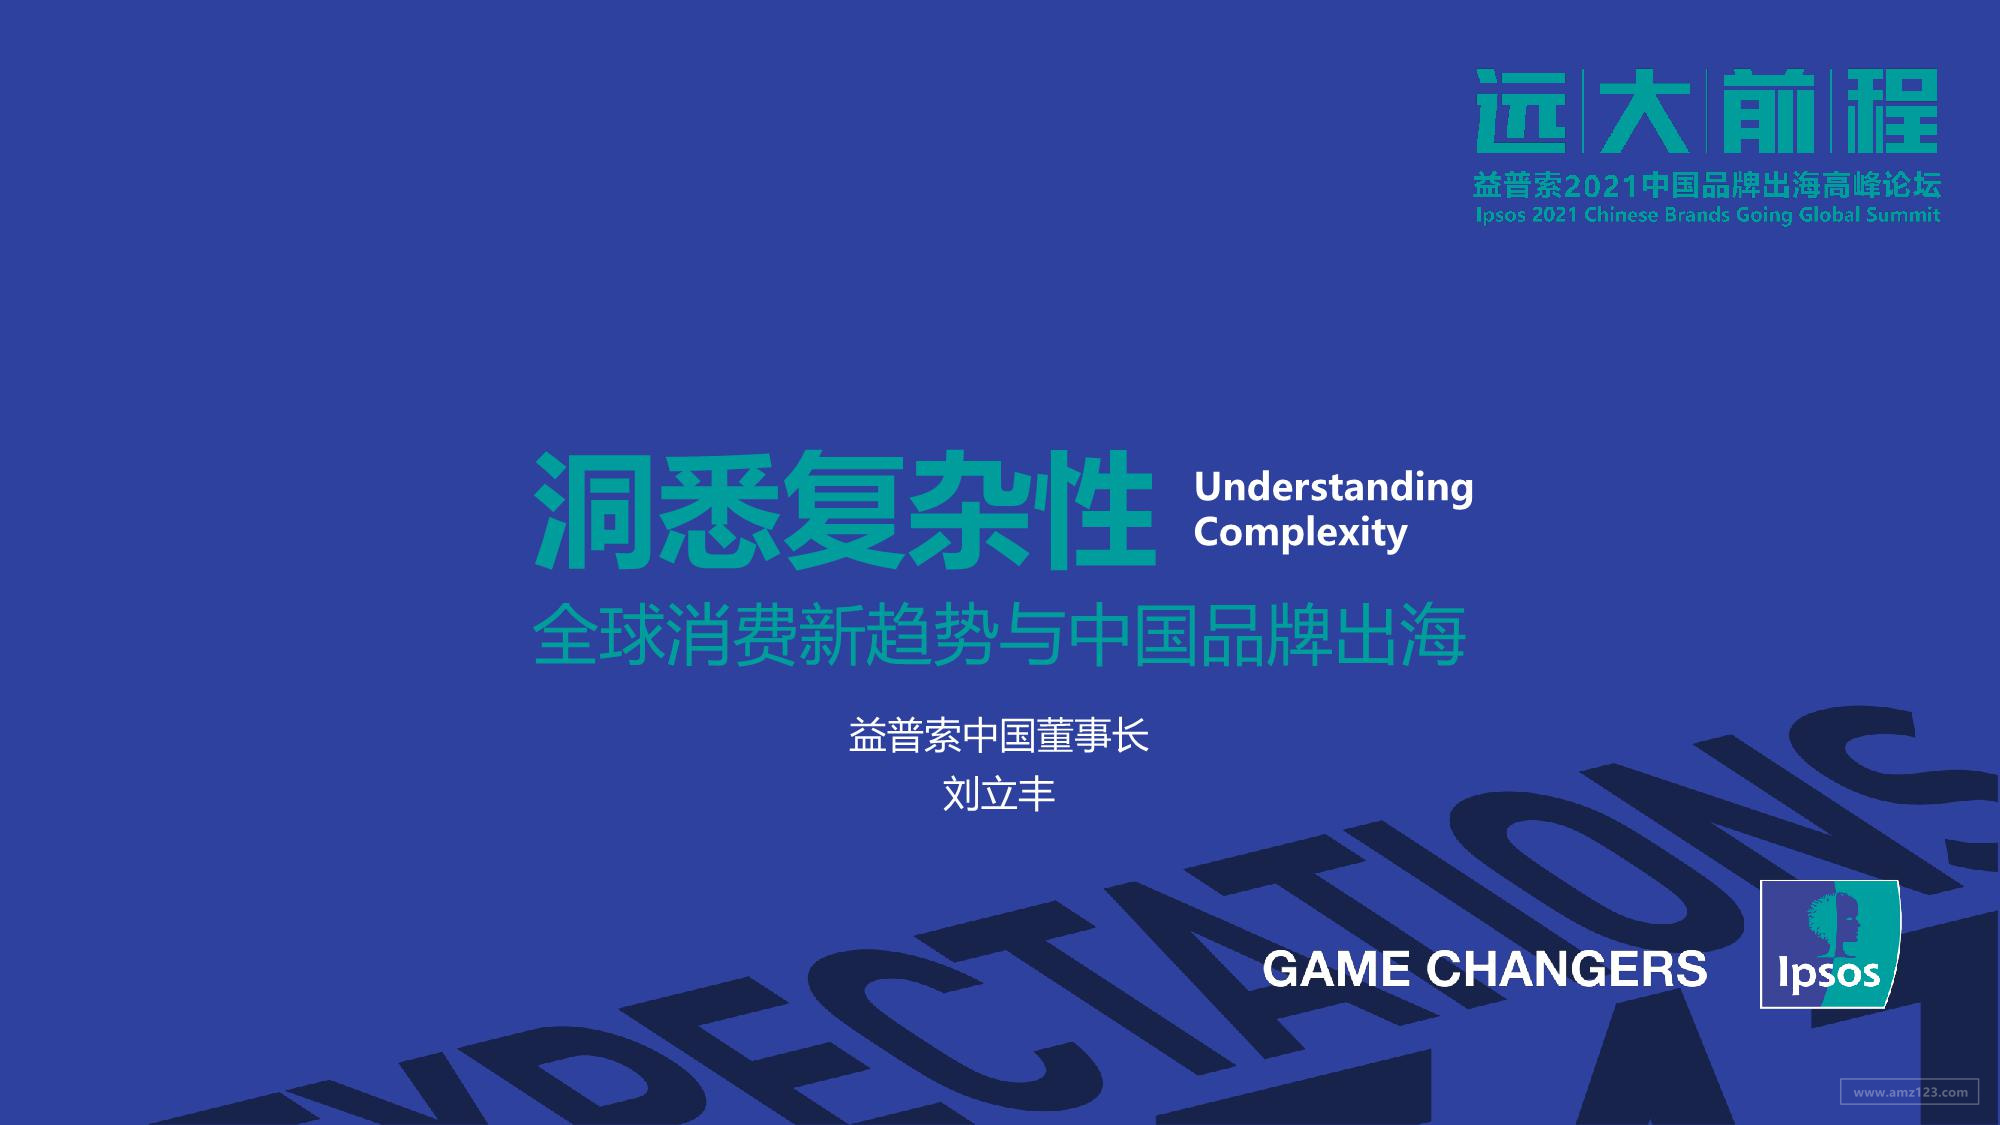 《全球消费新趋势与中国品牌出海：洞悉复杂性》PDF下载